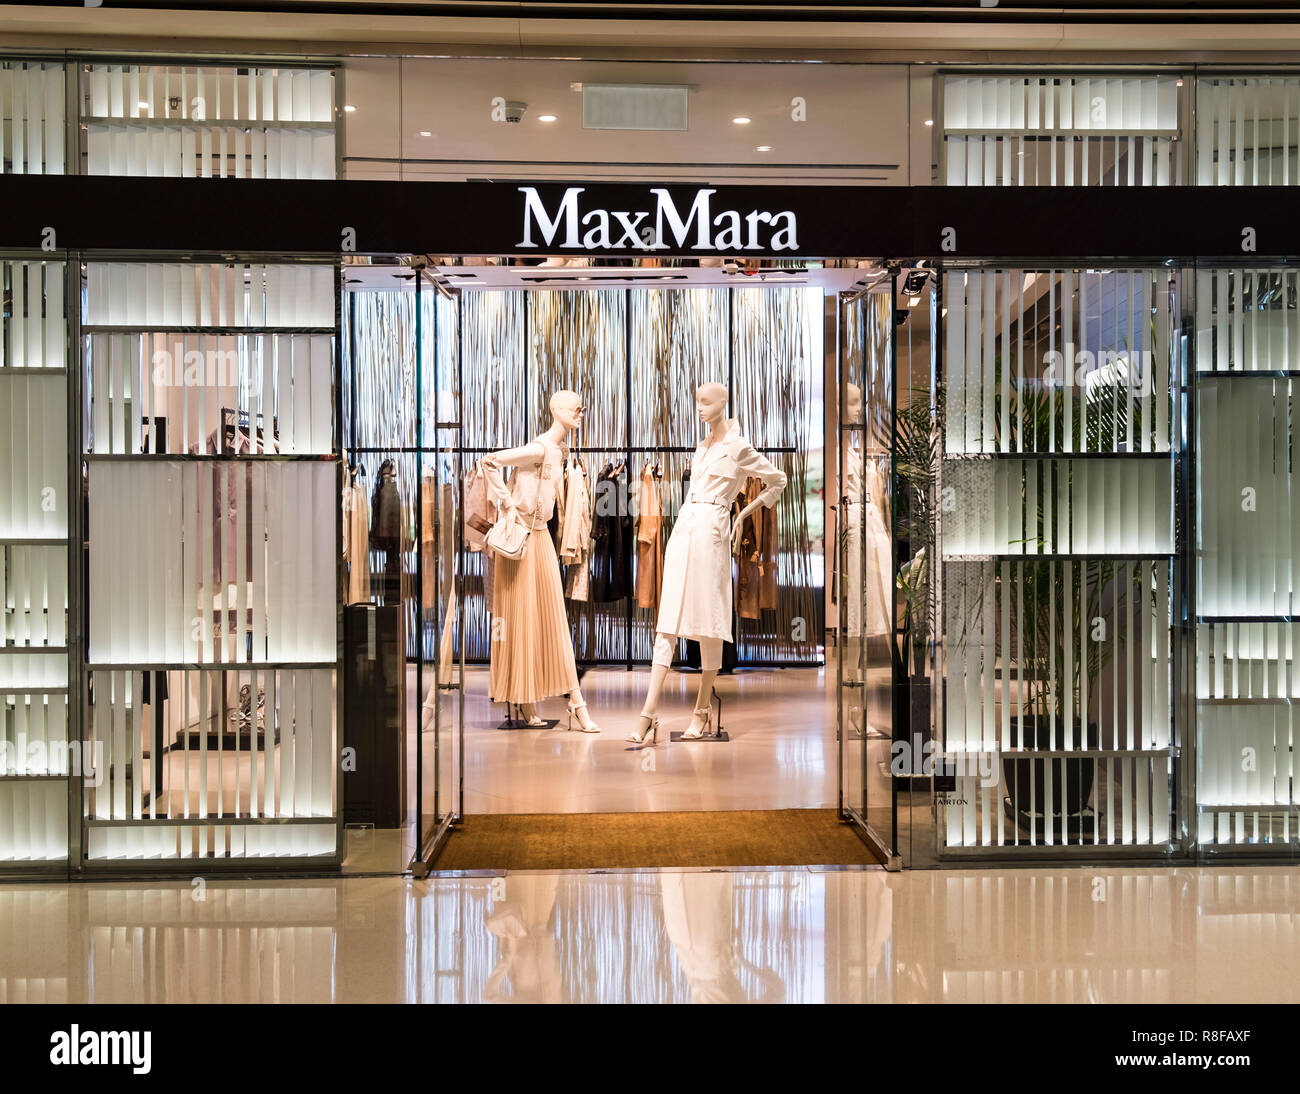 Hong Kong, April 7, 2019: Max Mara store in Hong Kong Stock Photo - Alamy